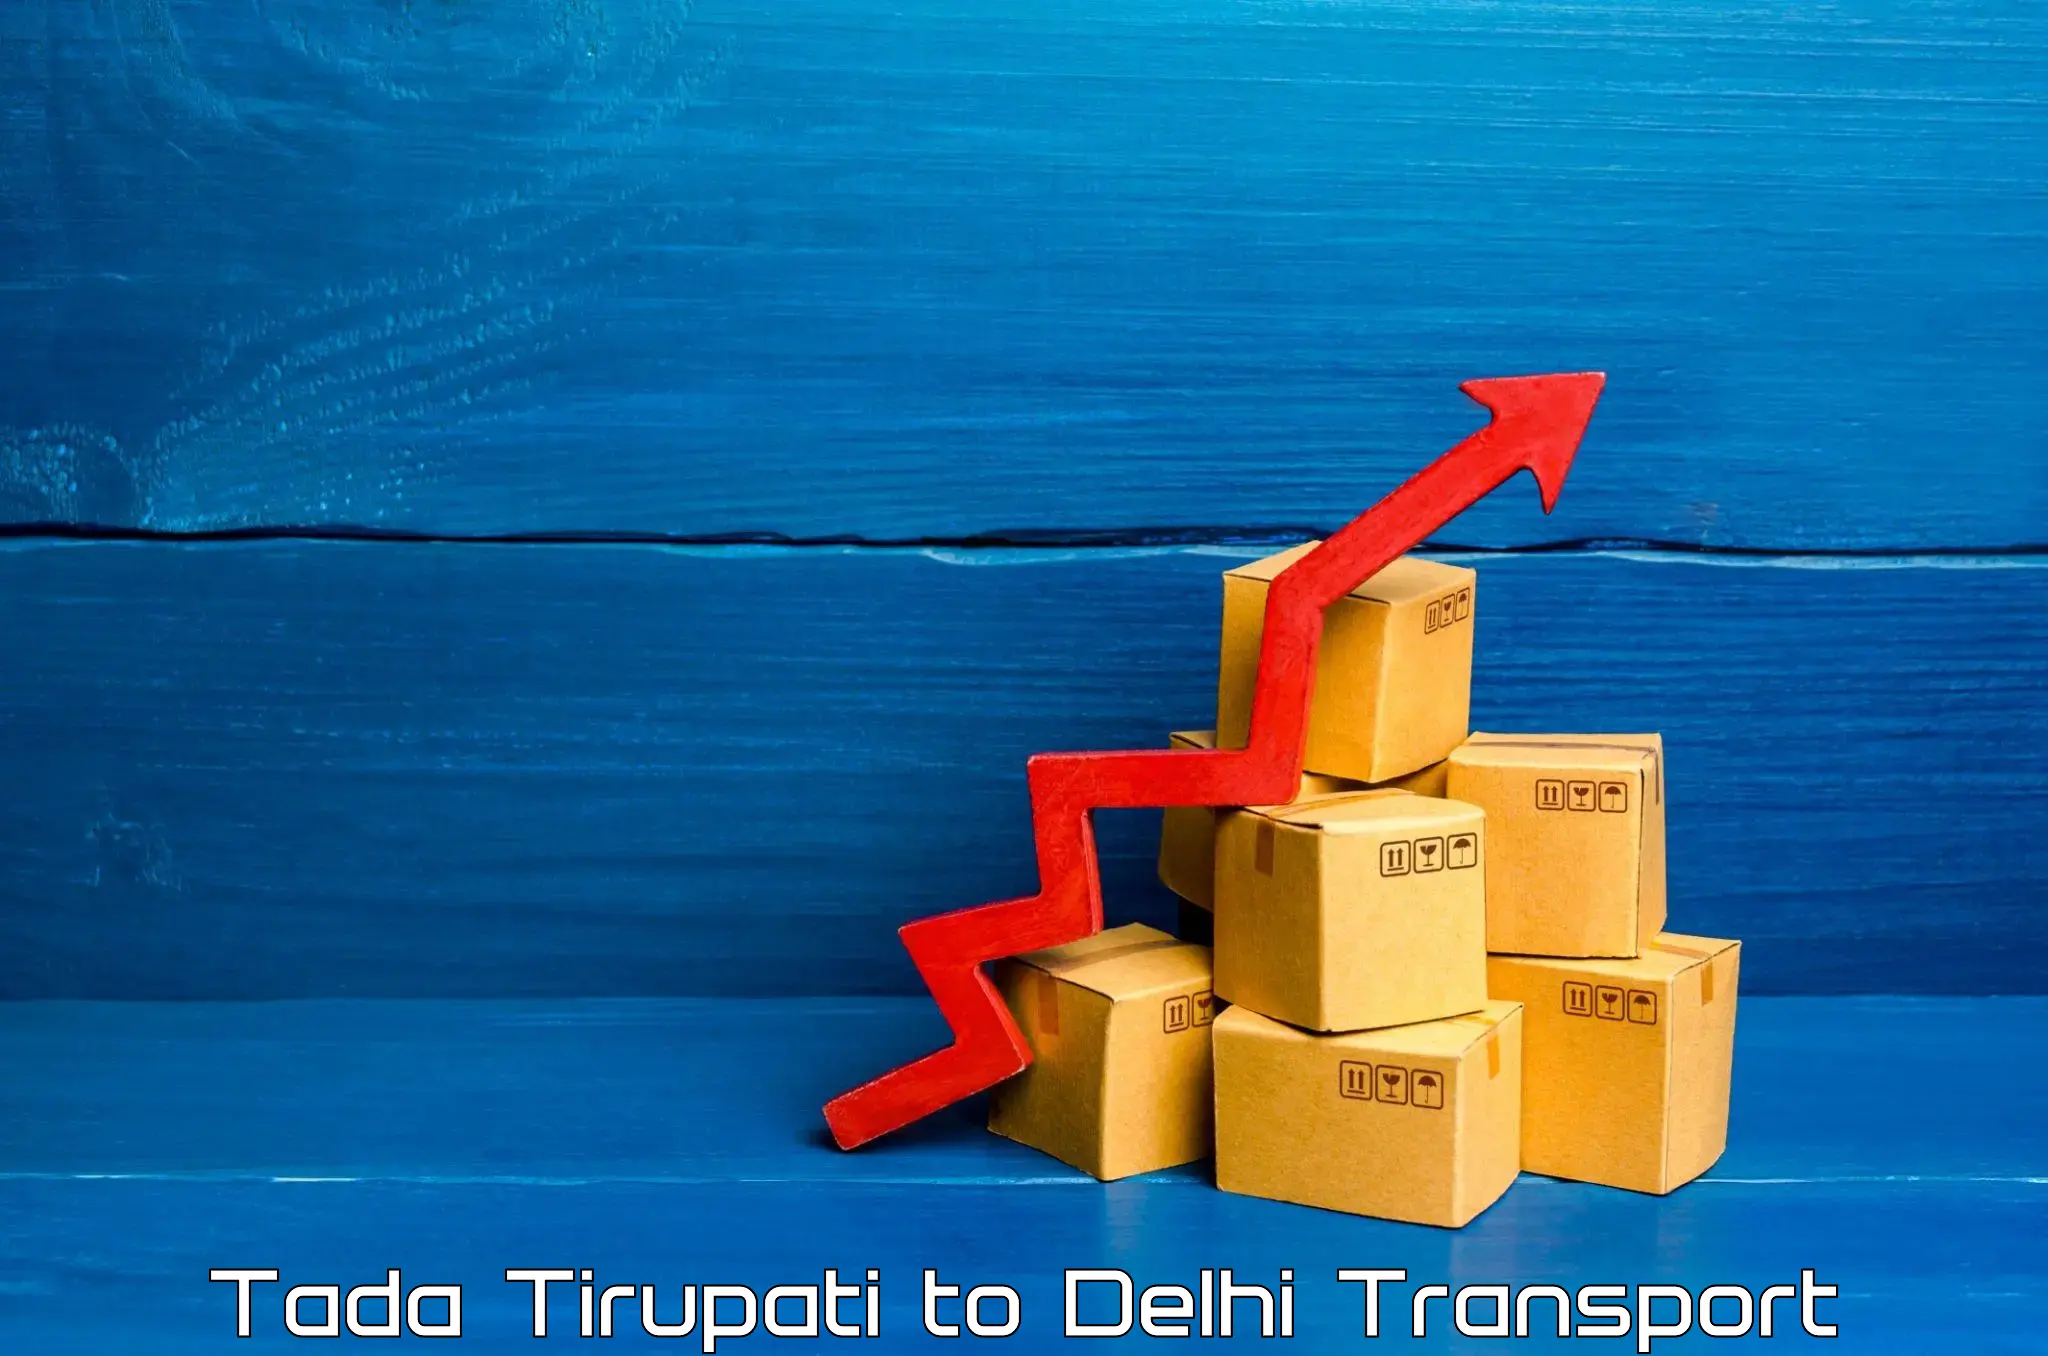 Commercial transport service Tada Tirupati to East Delhi